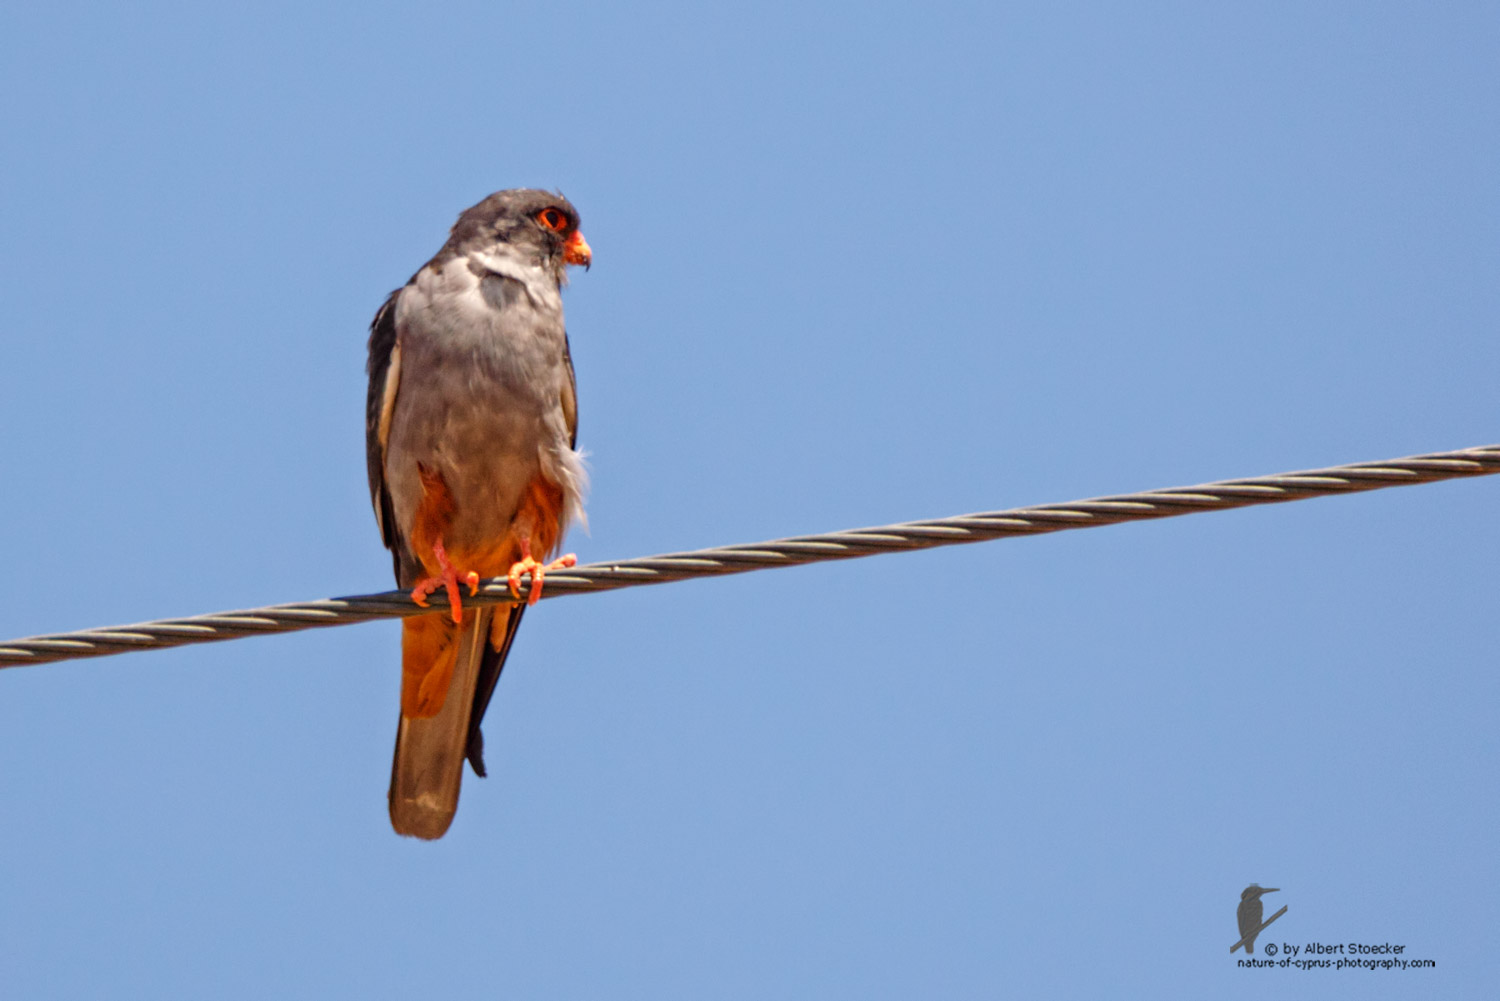 Falco amurensis - Amur falcon male - Amurfalke, Cyprus, Agia Varvara - Anarita, Paphos, Mai 2016